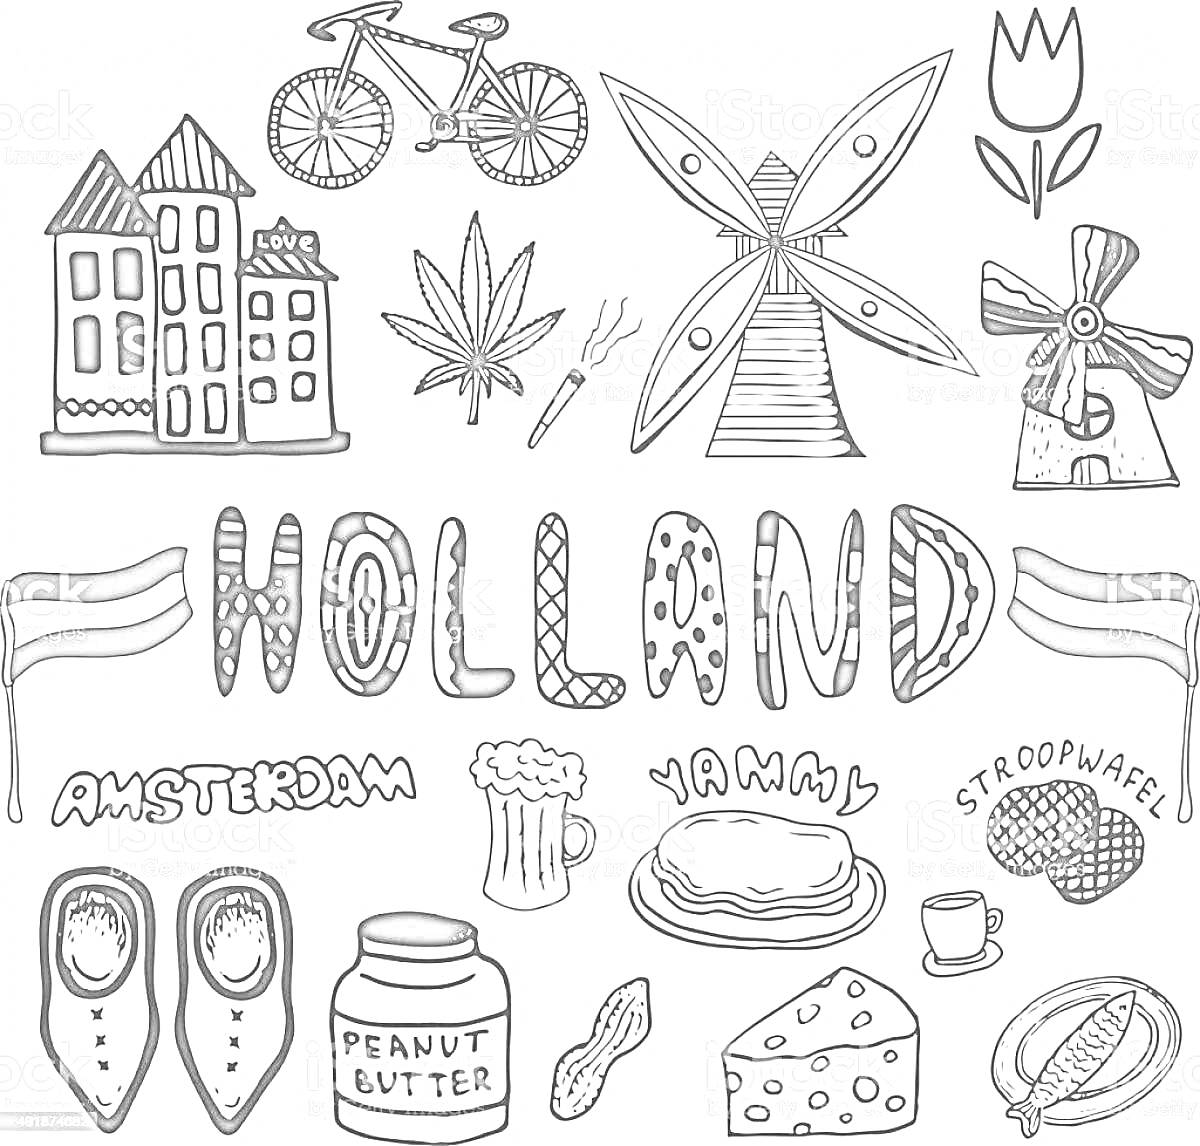 Раскраска Домики, велосипед, тюльпан, мельницы, флаги, амстердам, листы, пиво, вафли, деревянные башмаки, арахисовая паста, сыр